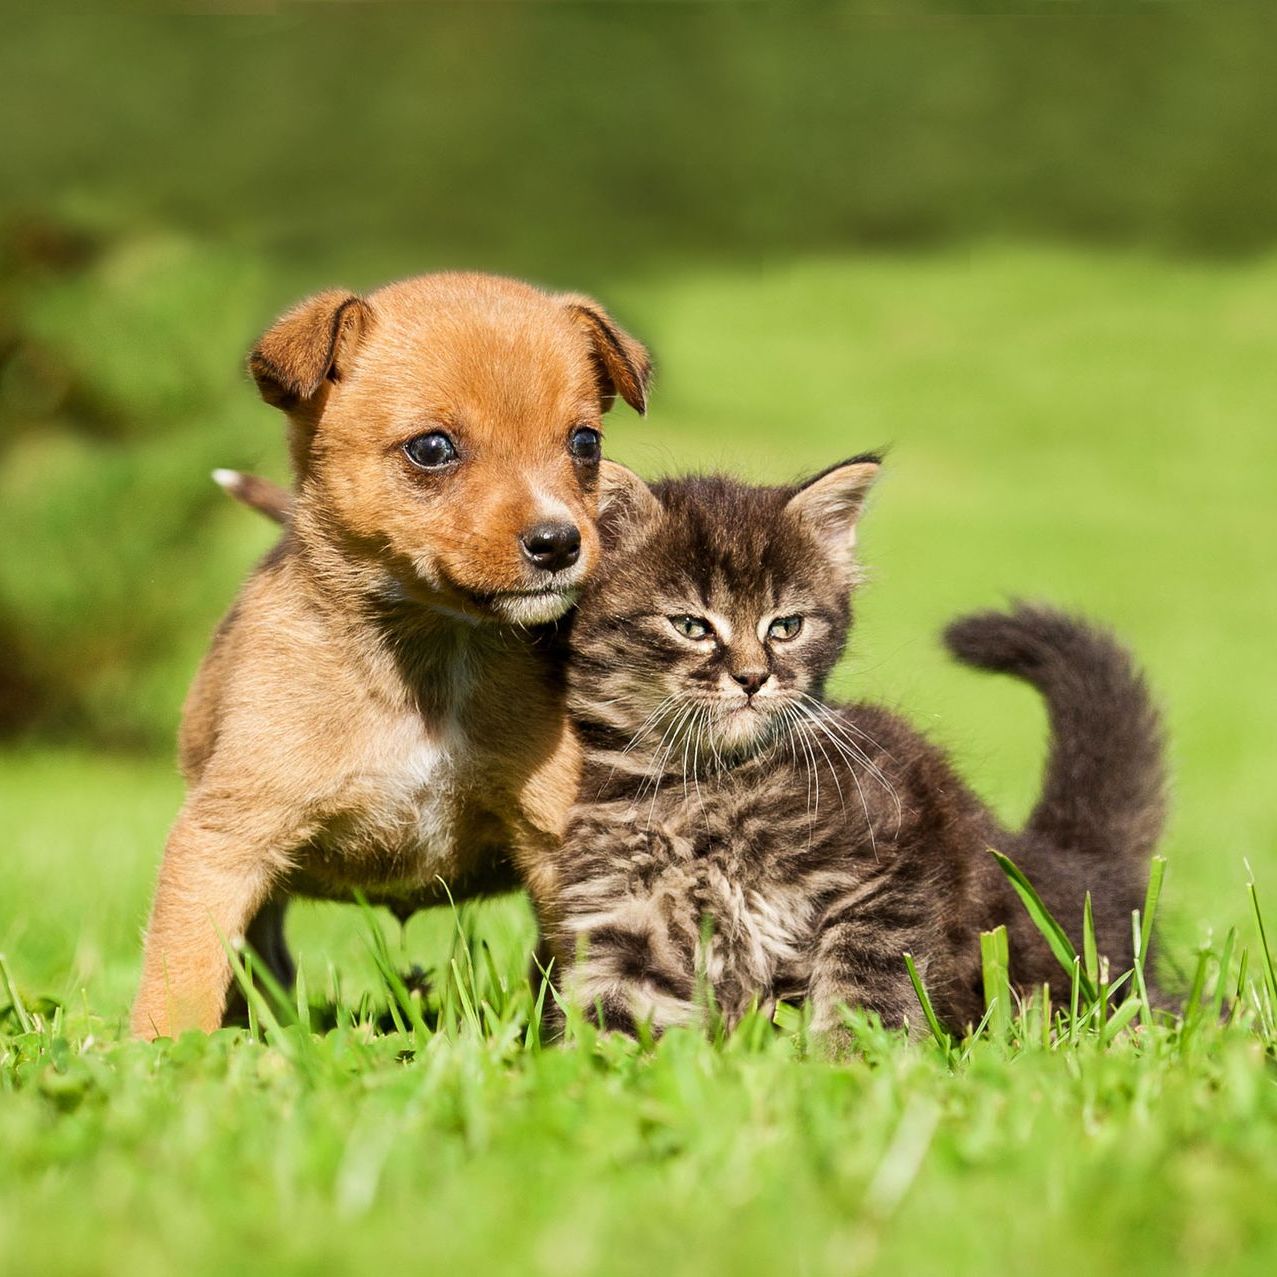 Puppy with kitten in grass